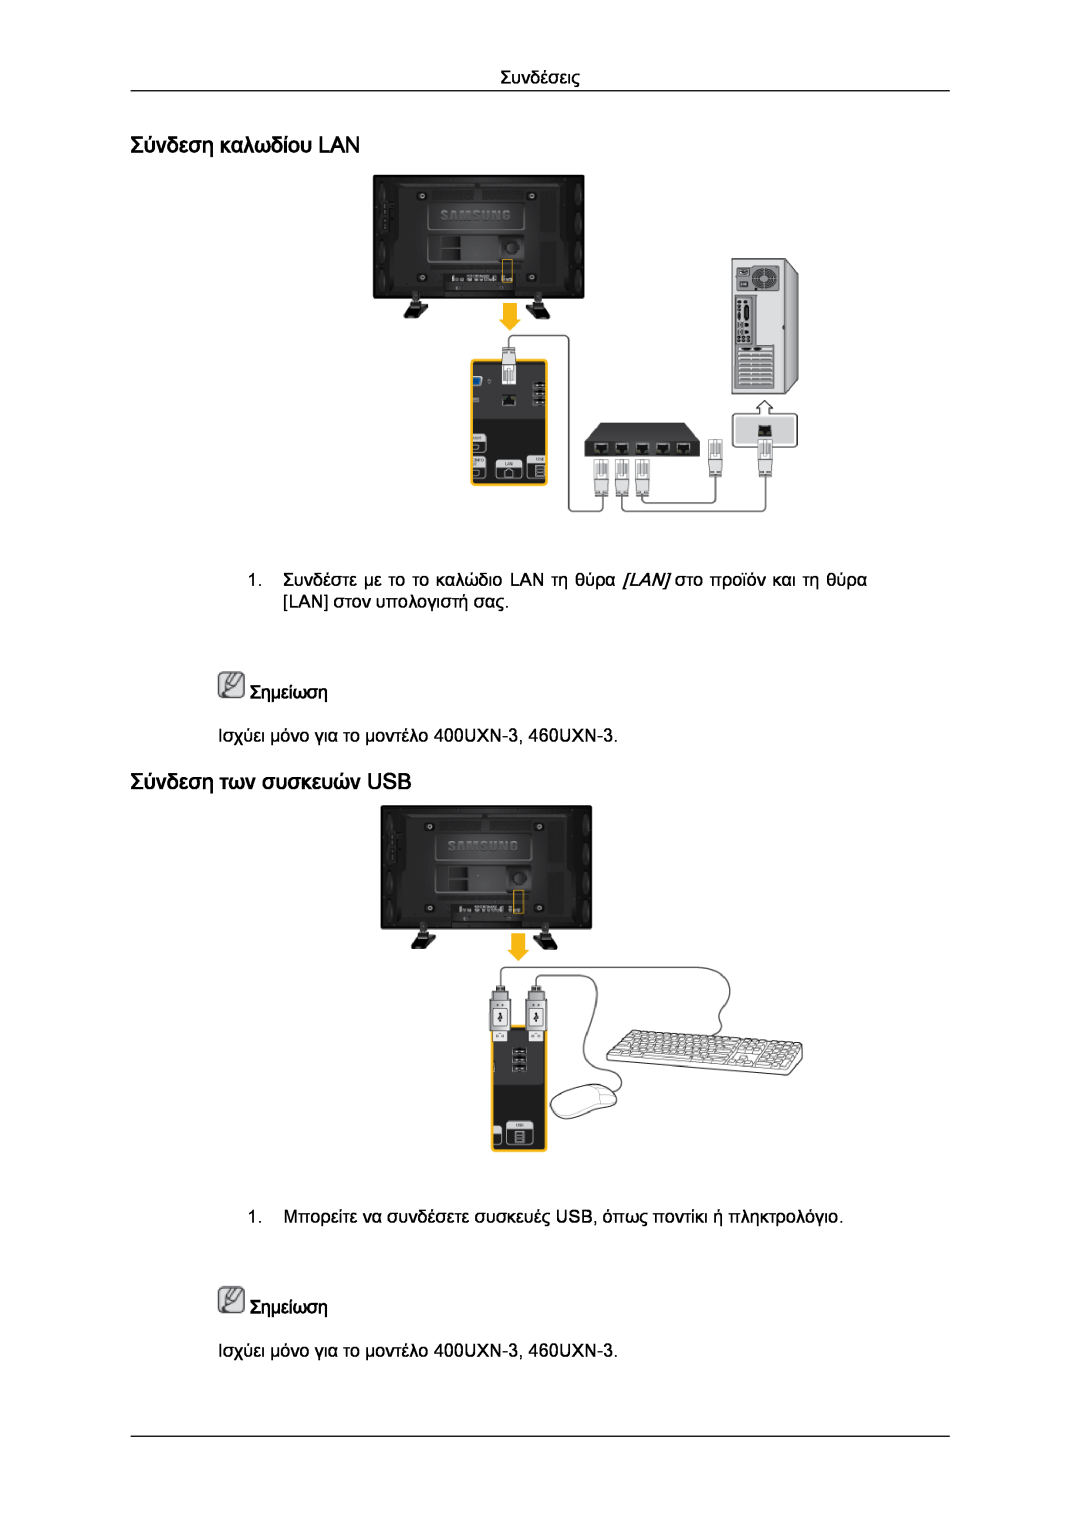 Samsung LH40GWTLBC/EN, LH40GWSLBC/EN, LH46GWPLBC/EN, LH40GWPLBC/EN Σύνδεση καλωδίου LAN, Σύνδεση των συσκευών USB, Σημείωση 